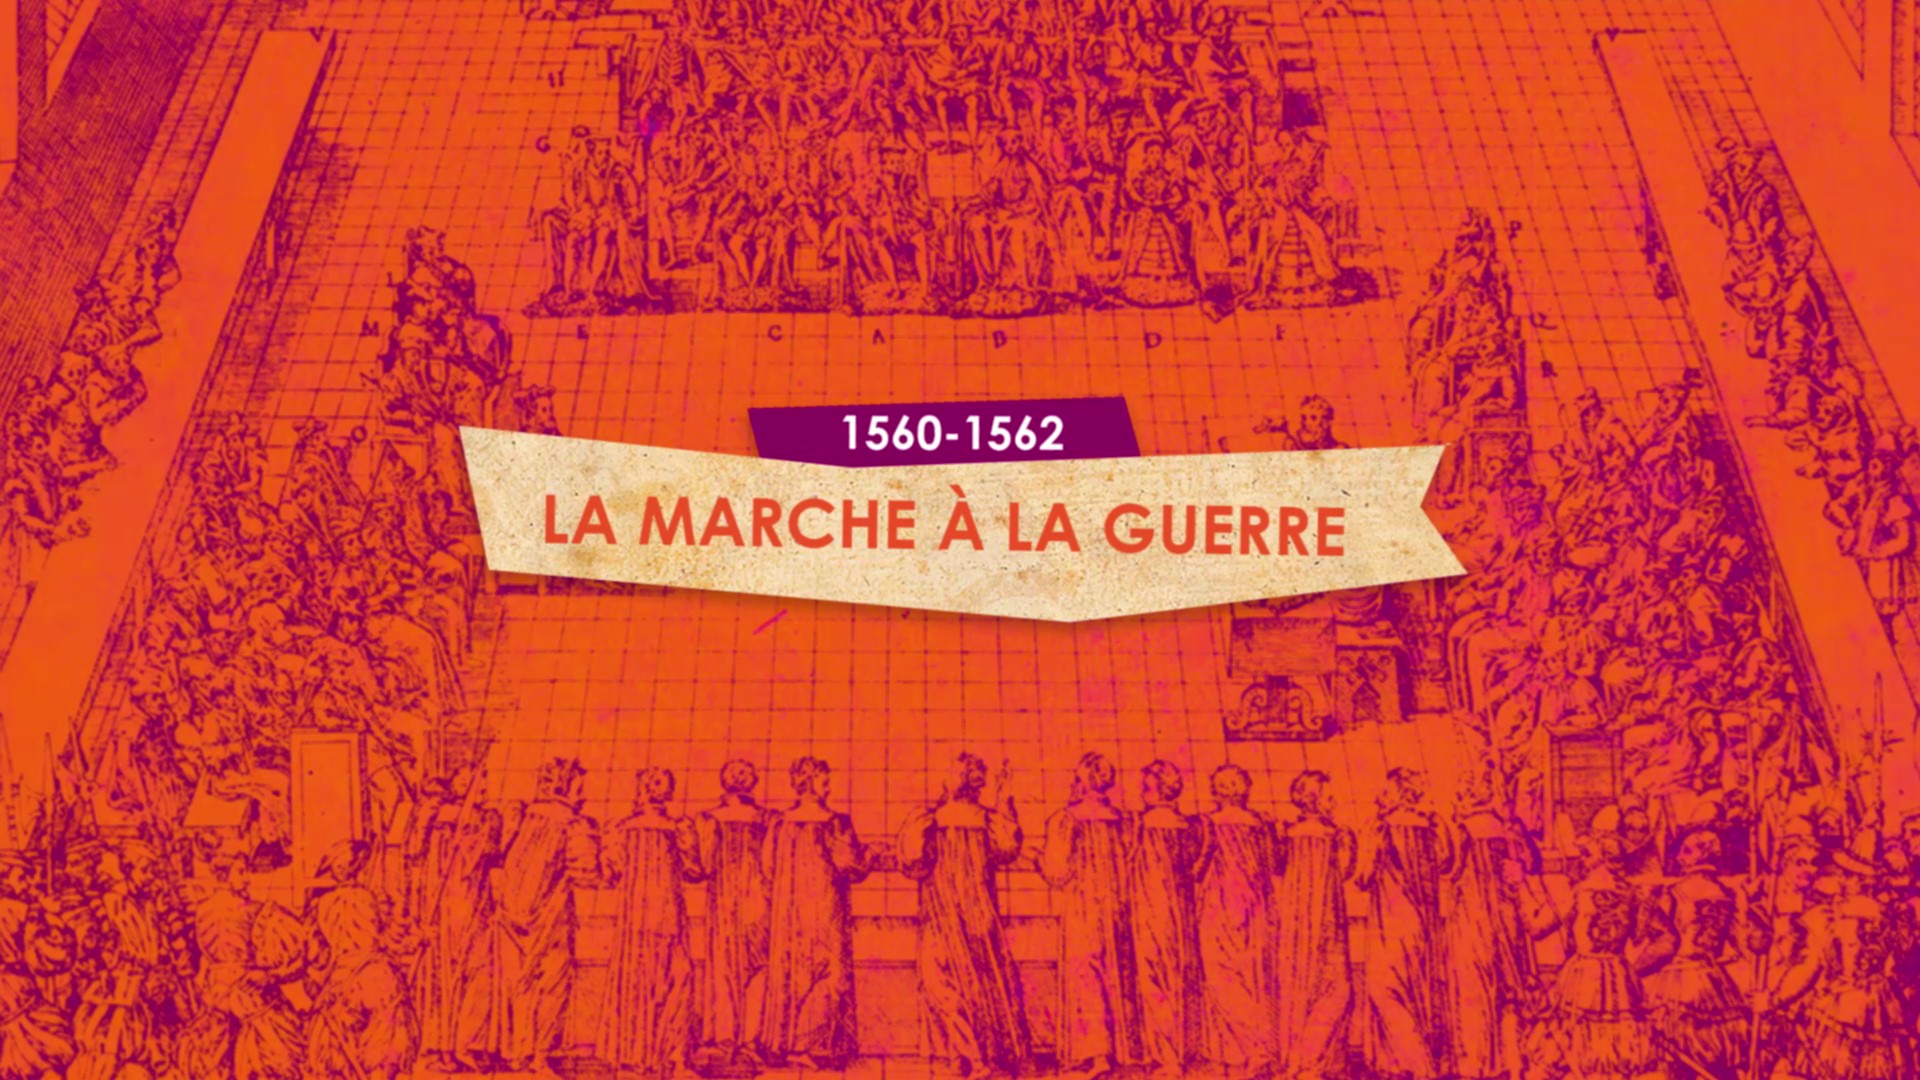 1560/1562 La marche à la guerre